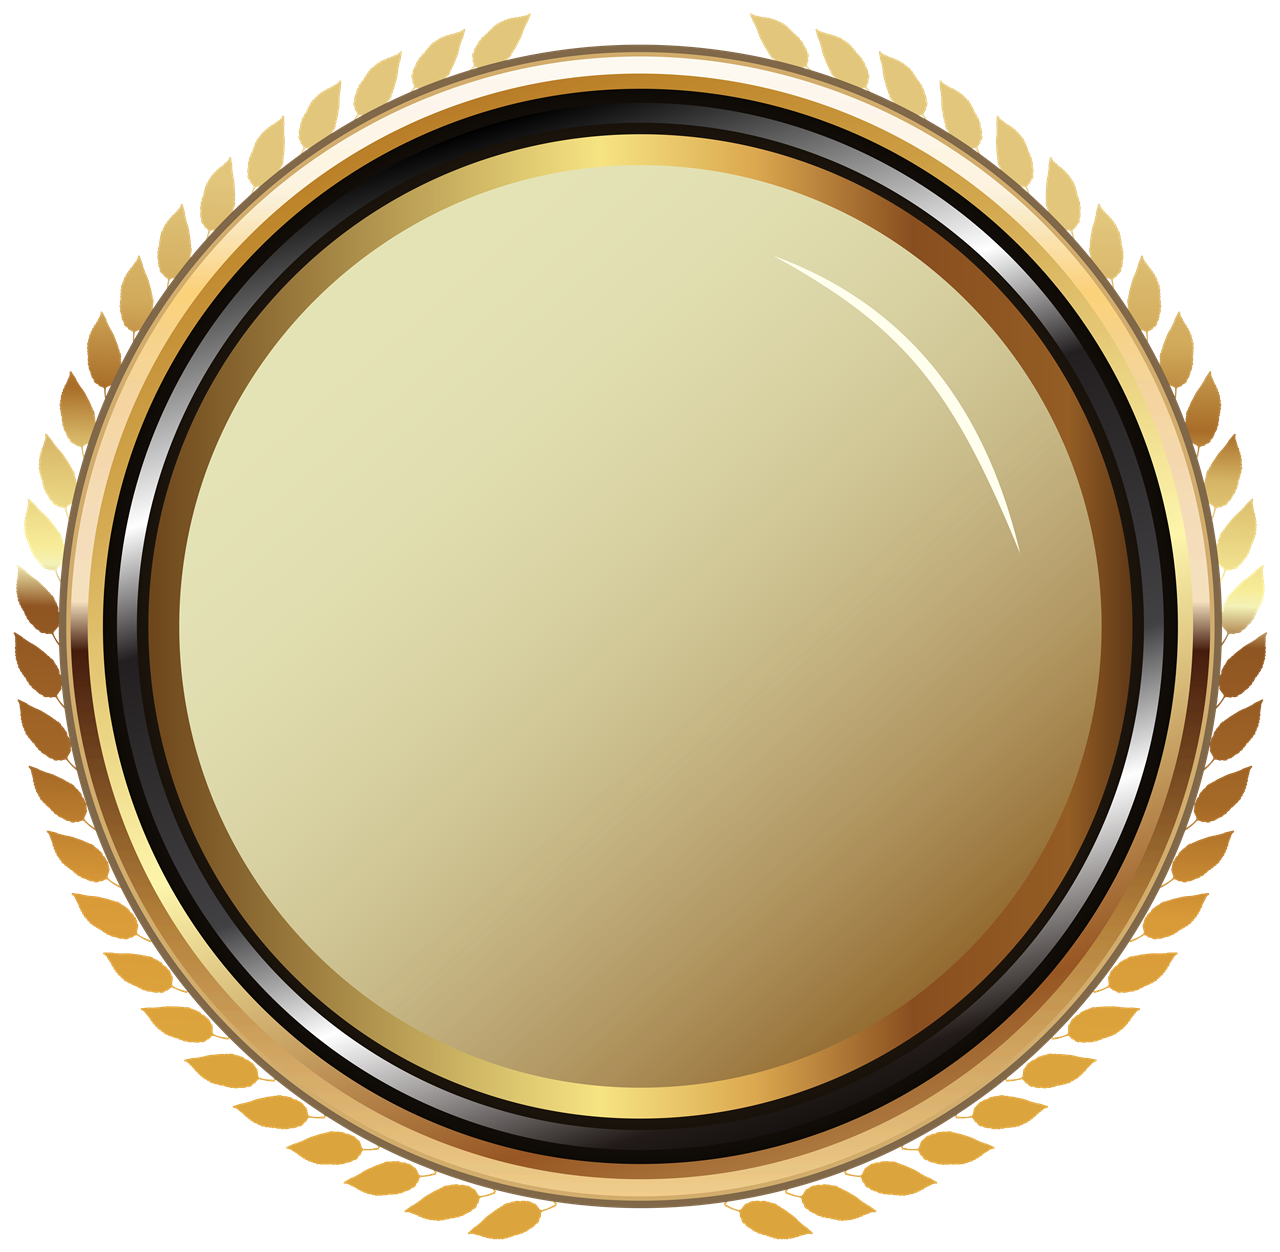 Golden Badge PNG Image Background